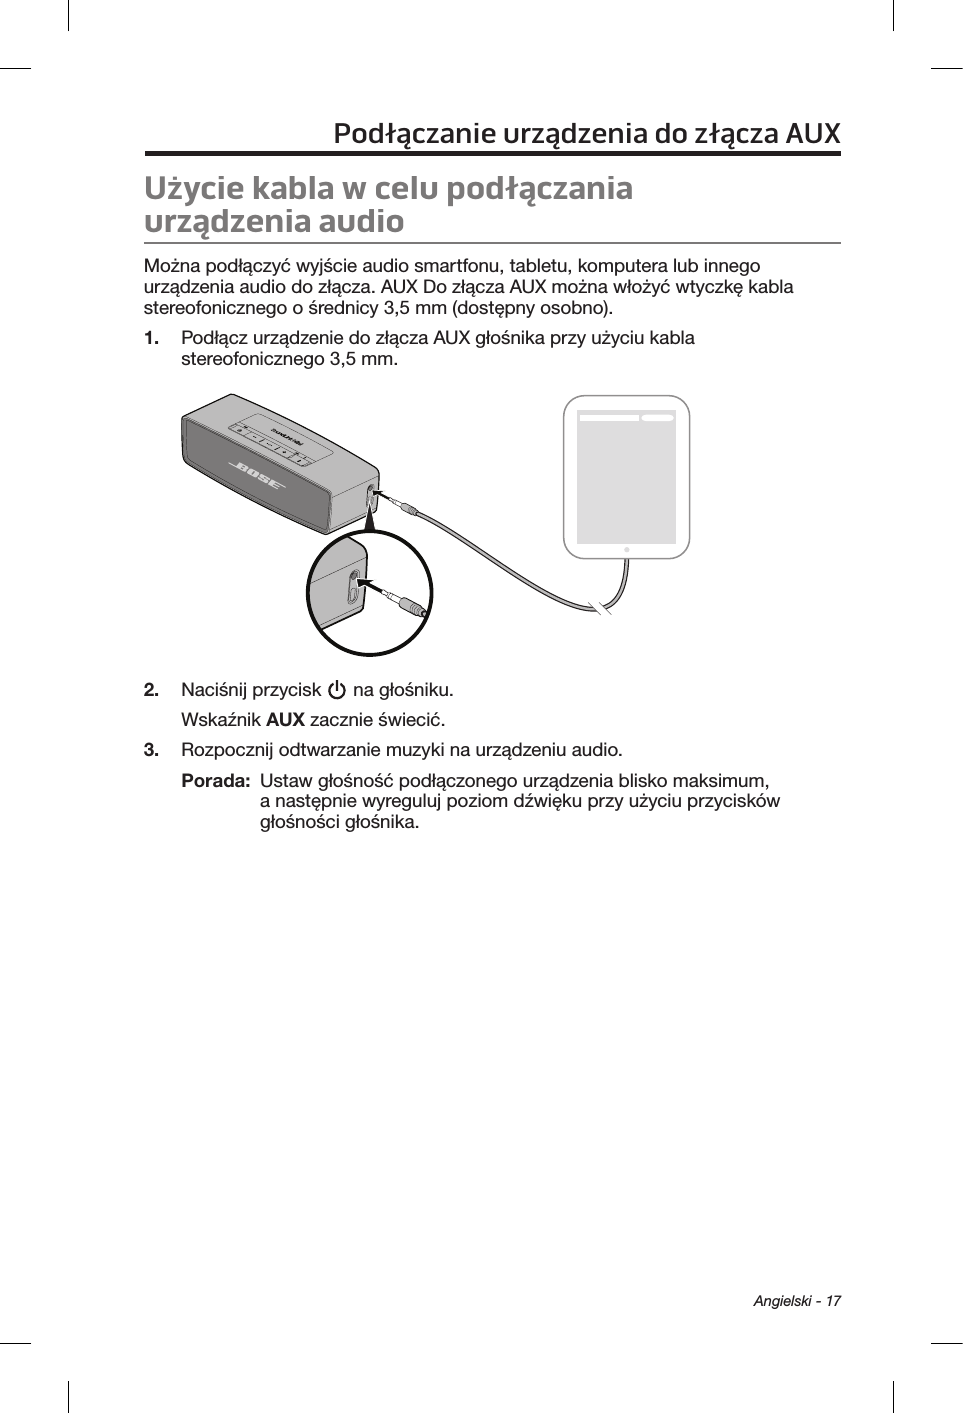  Angielski - 17Podłączanie urządzenia do złącza AUXUżycie kabla wcelu podłączania urządzeniaaudioMożna podłączyć wyjście audio smartfonu, tabletu, komputera lub innego urządzenia audio do złącza. AUX Do złącza AUX można włożyć wtyczkę kabla stereofonicznego o średnicy 3,5 mm (dostępny osobno).1.  Podłącz urządzenie do złącza AUX głośnika przy użyciu kabla stereofonicznego 3,5 mm.2.  Naciśnij przycisk   na głośniku.Wskaźnik AUX zacznie świecić.3.  Rozpocznij odtwarzanie muzyki na urządzeniu audio.Porada:   Ustaw głośność podłączonego urządzenia blisko maksimum, a następnie wyreguluj poziom dźwięku przy użyciu przycisków głośności głośnika.